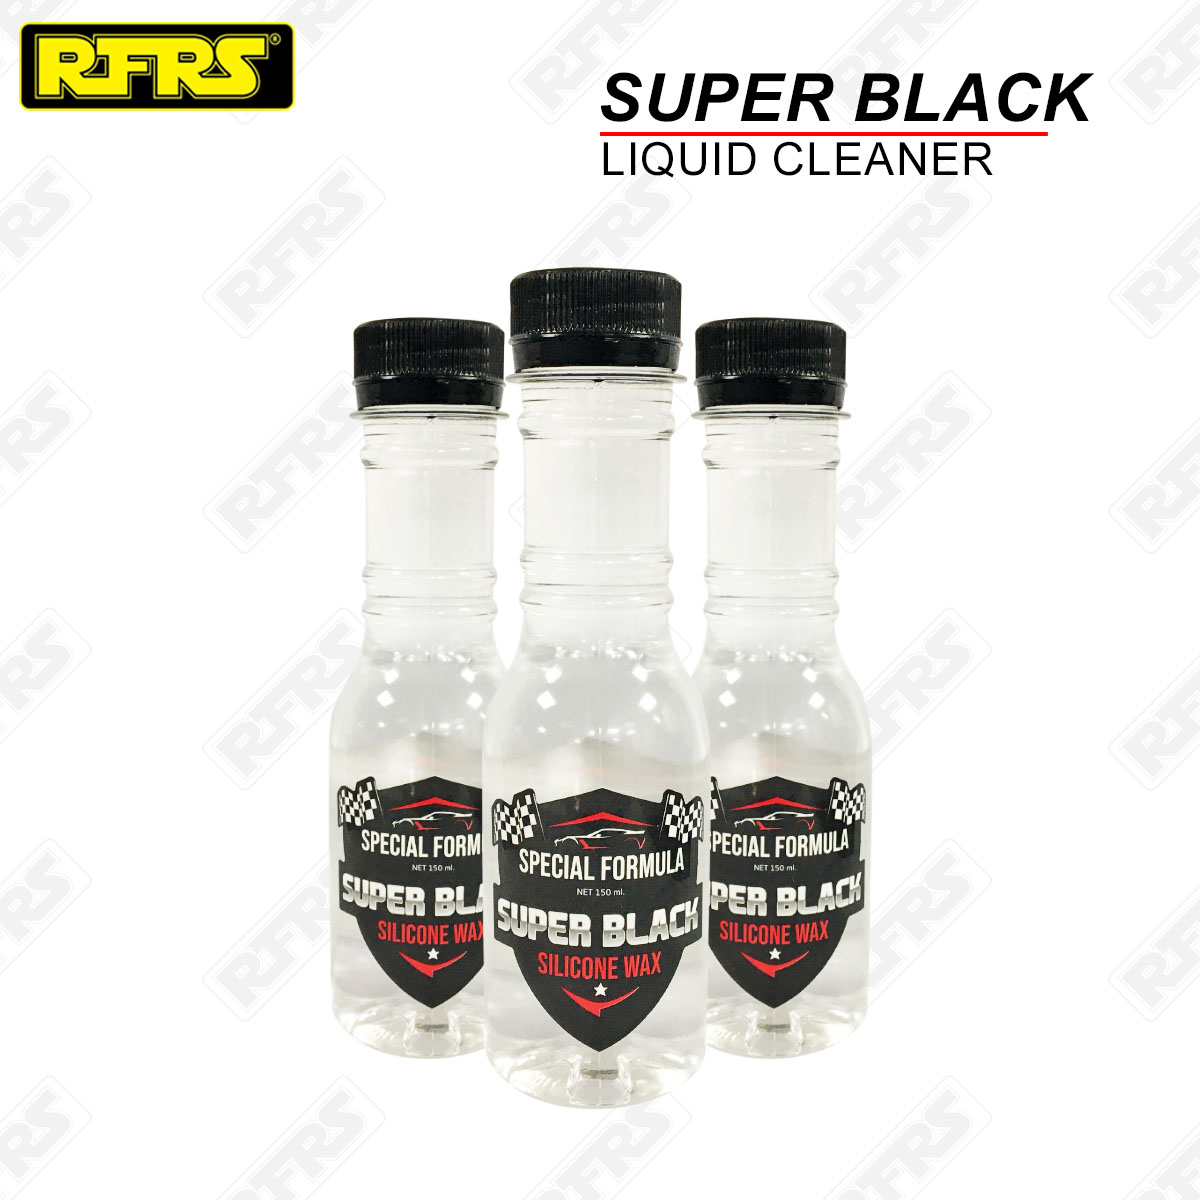 น้ำยาเคลือบสีรถ และน้ำยาเช็ดยางดำ SUPER BLACK  เซ็ทคู่ ( 2 ขวด สีใส1 ขวด สีชมพู1ขวด)